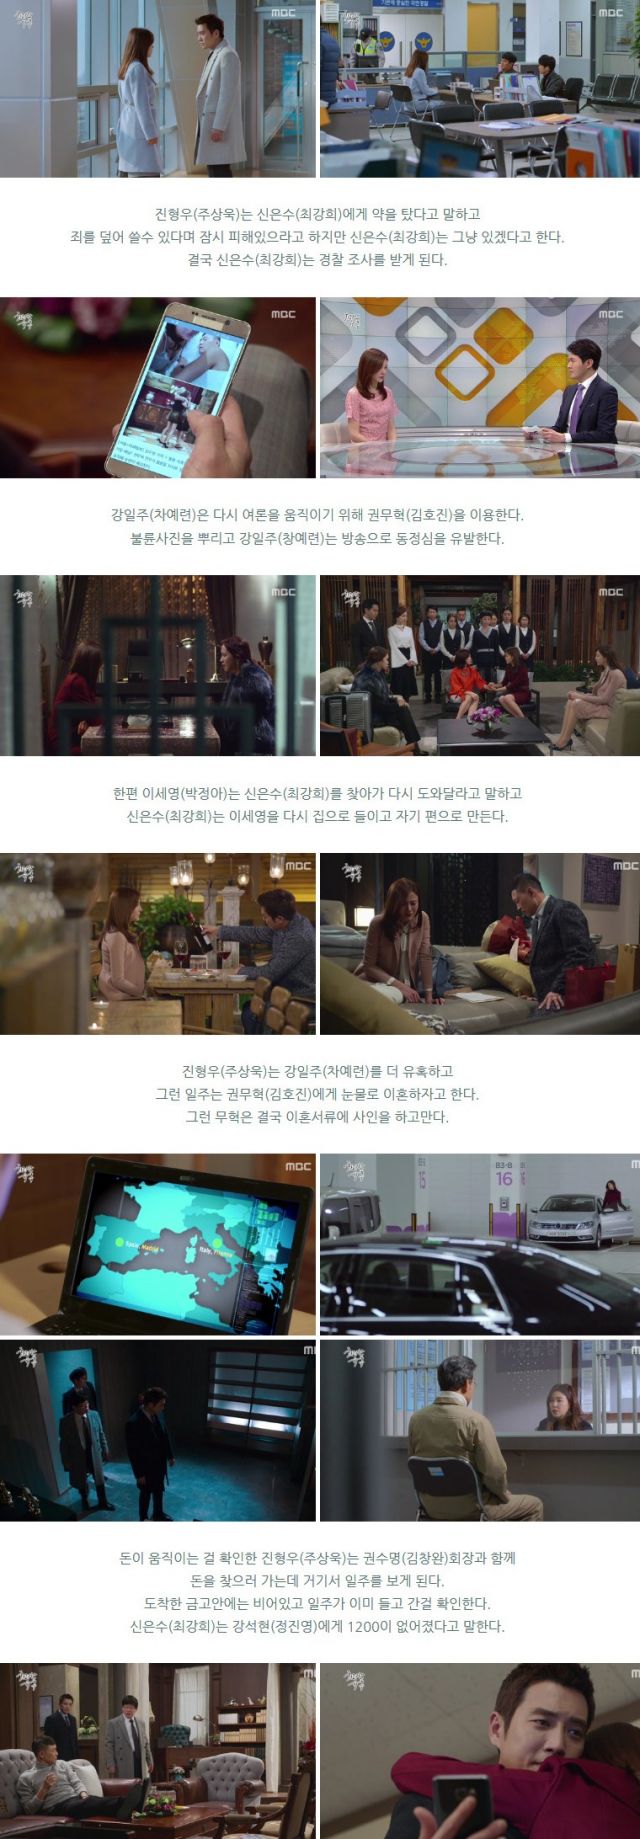 episode 35 captures for the Korean drama 'Glamorous Temptation'